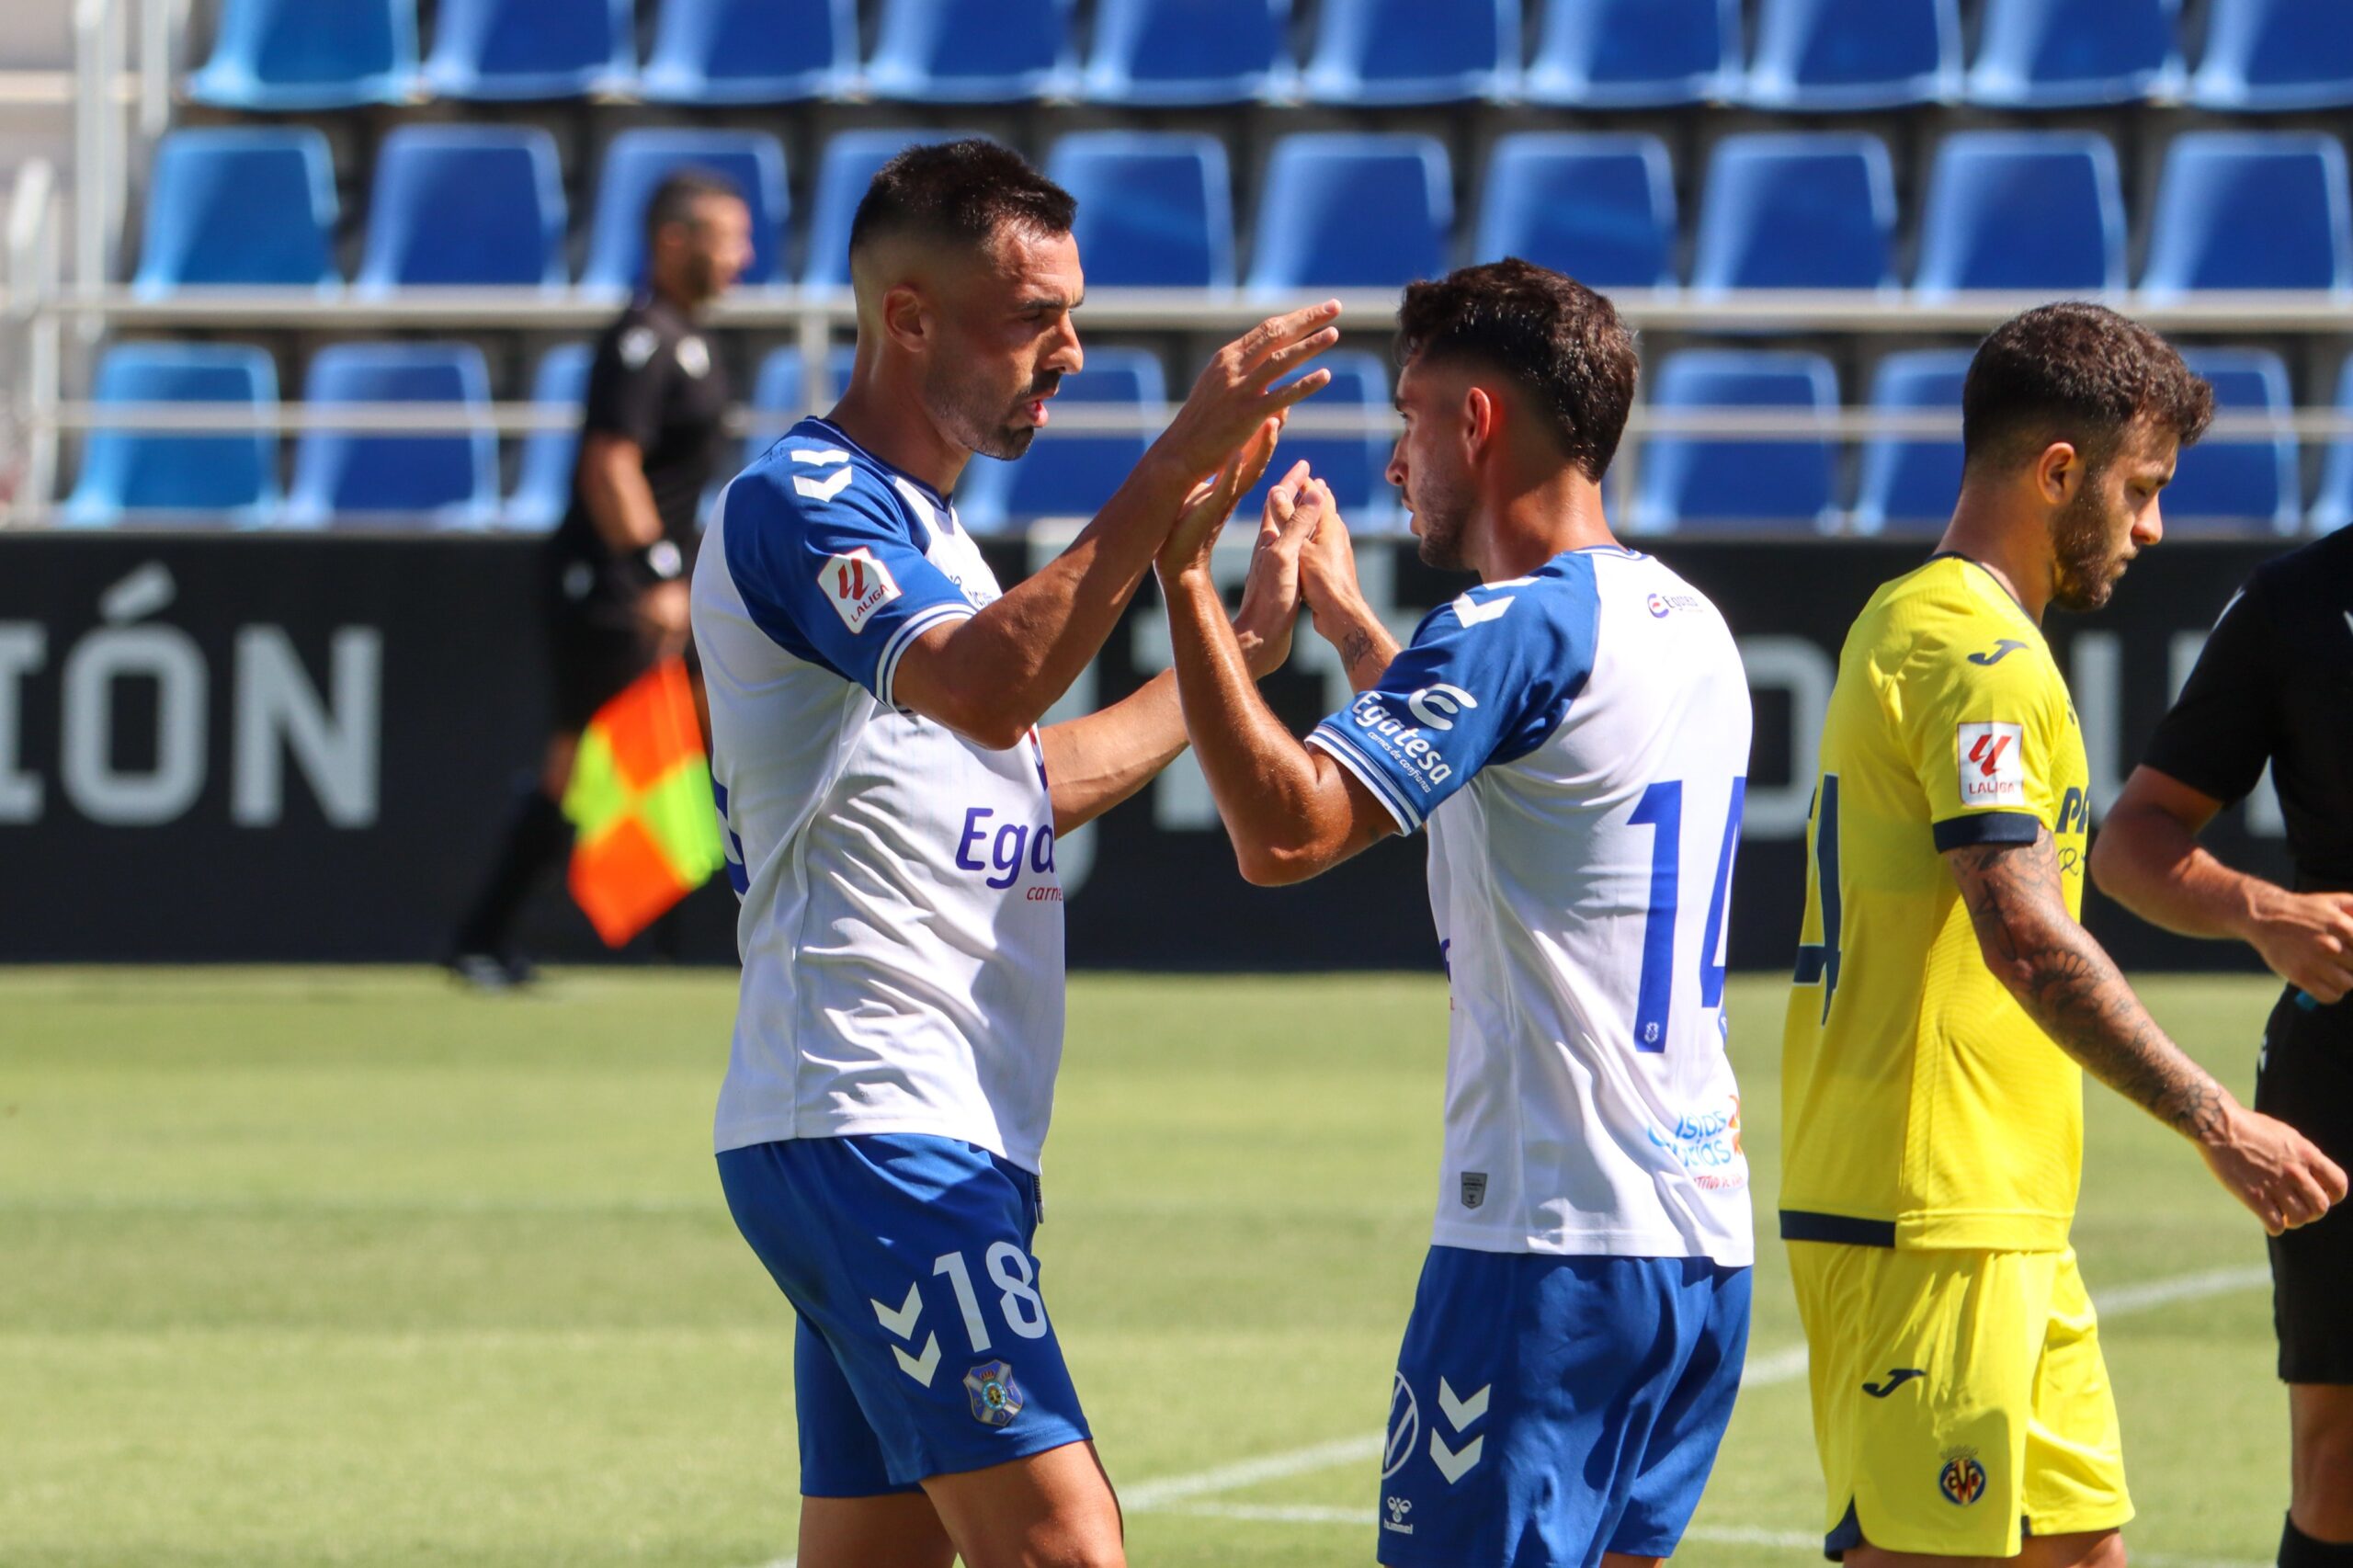 El Tenerife ganó 2-0 esta mañana al Villarreal B en un partido de entrenamiento en el Heliodoro